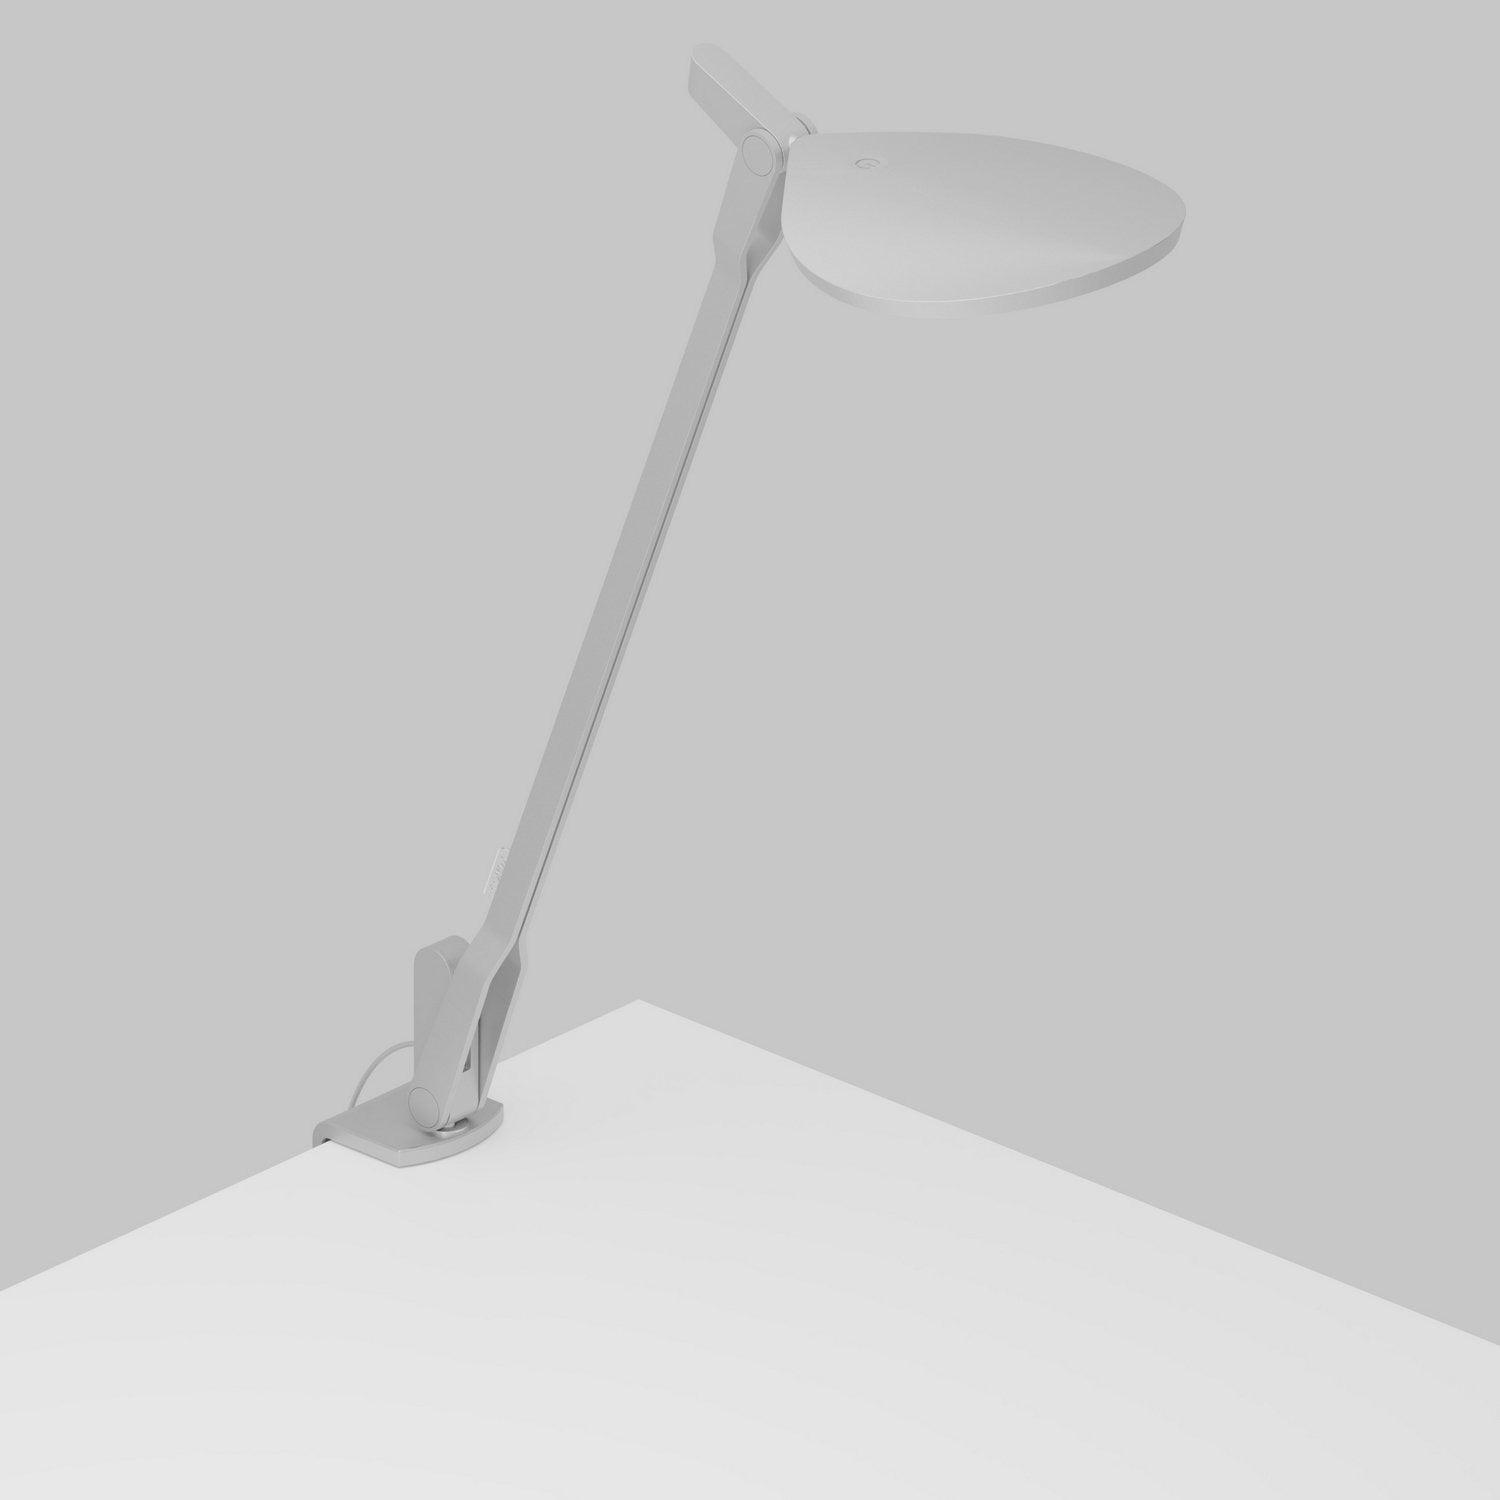 Ampoule électrique Xiaomi Lampe de bureau serene pro yeelight 